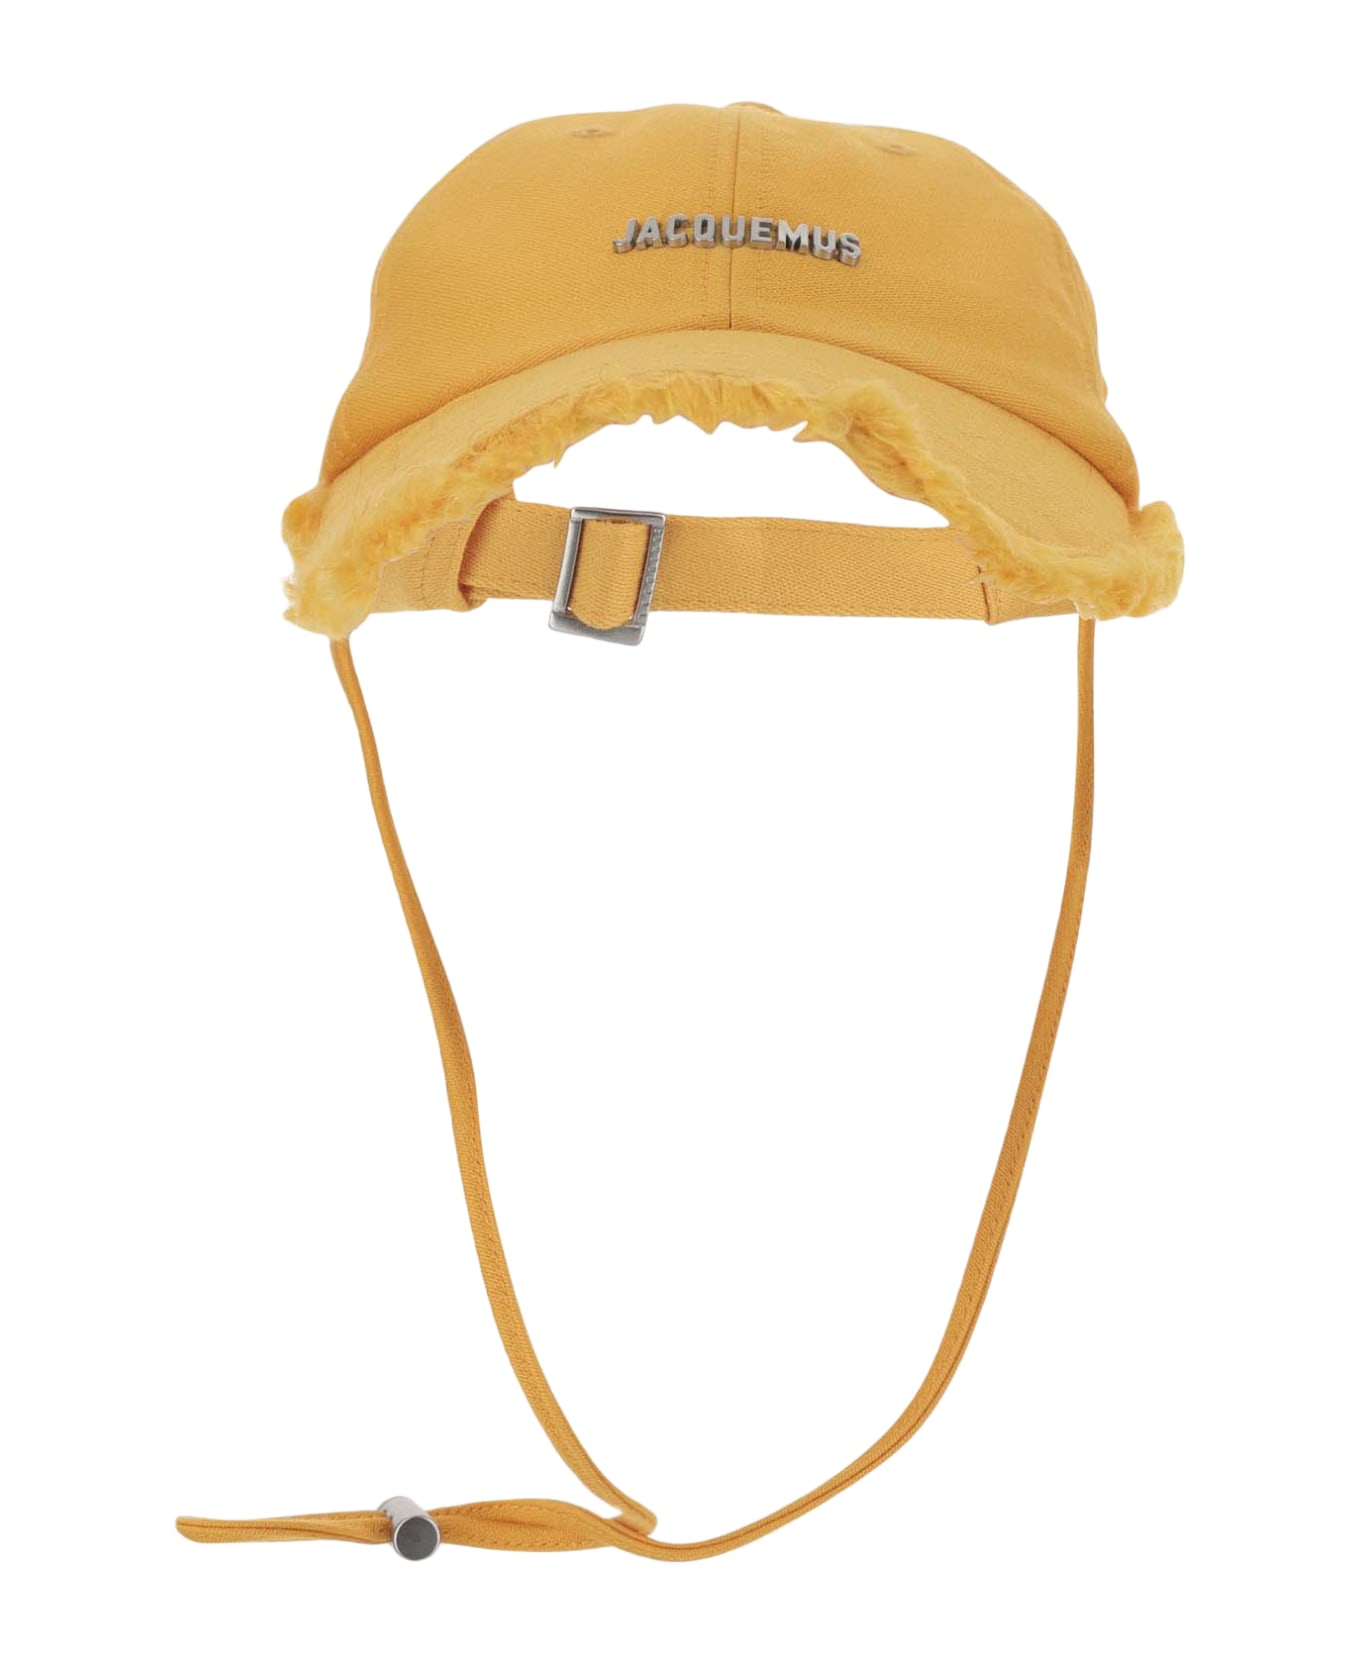 Jacquemus La Casquette Artichaut - Dark orange 帽子